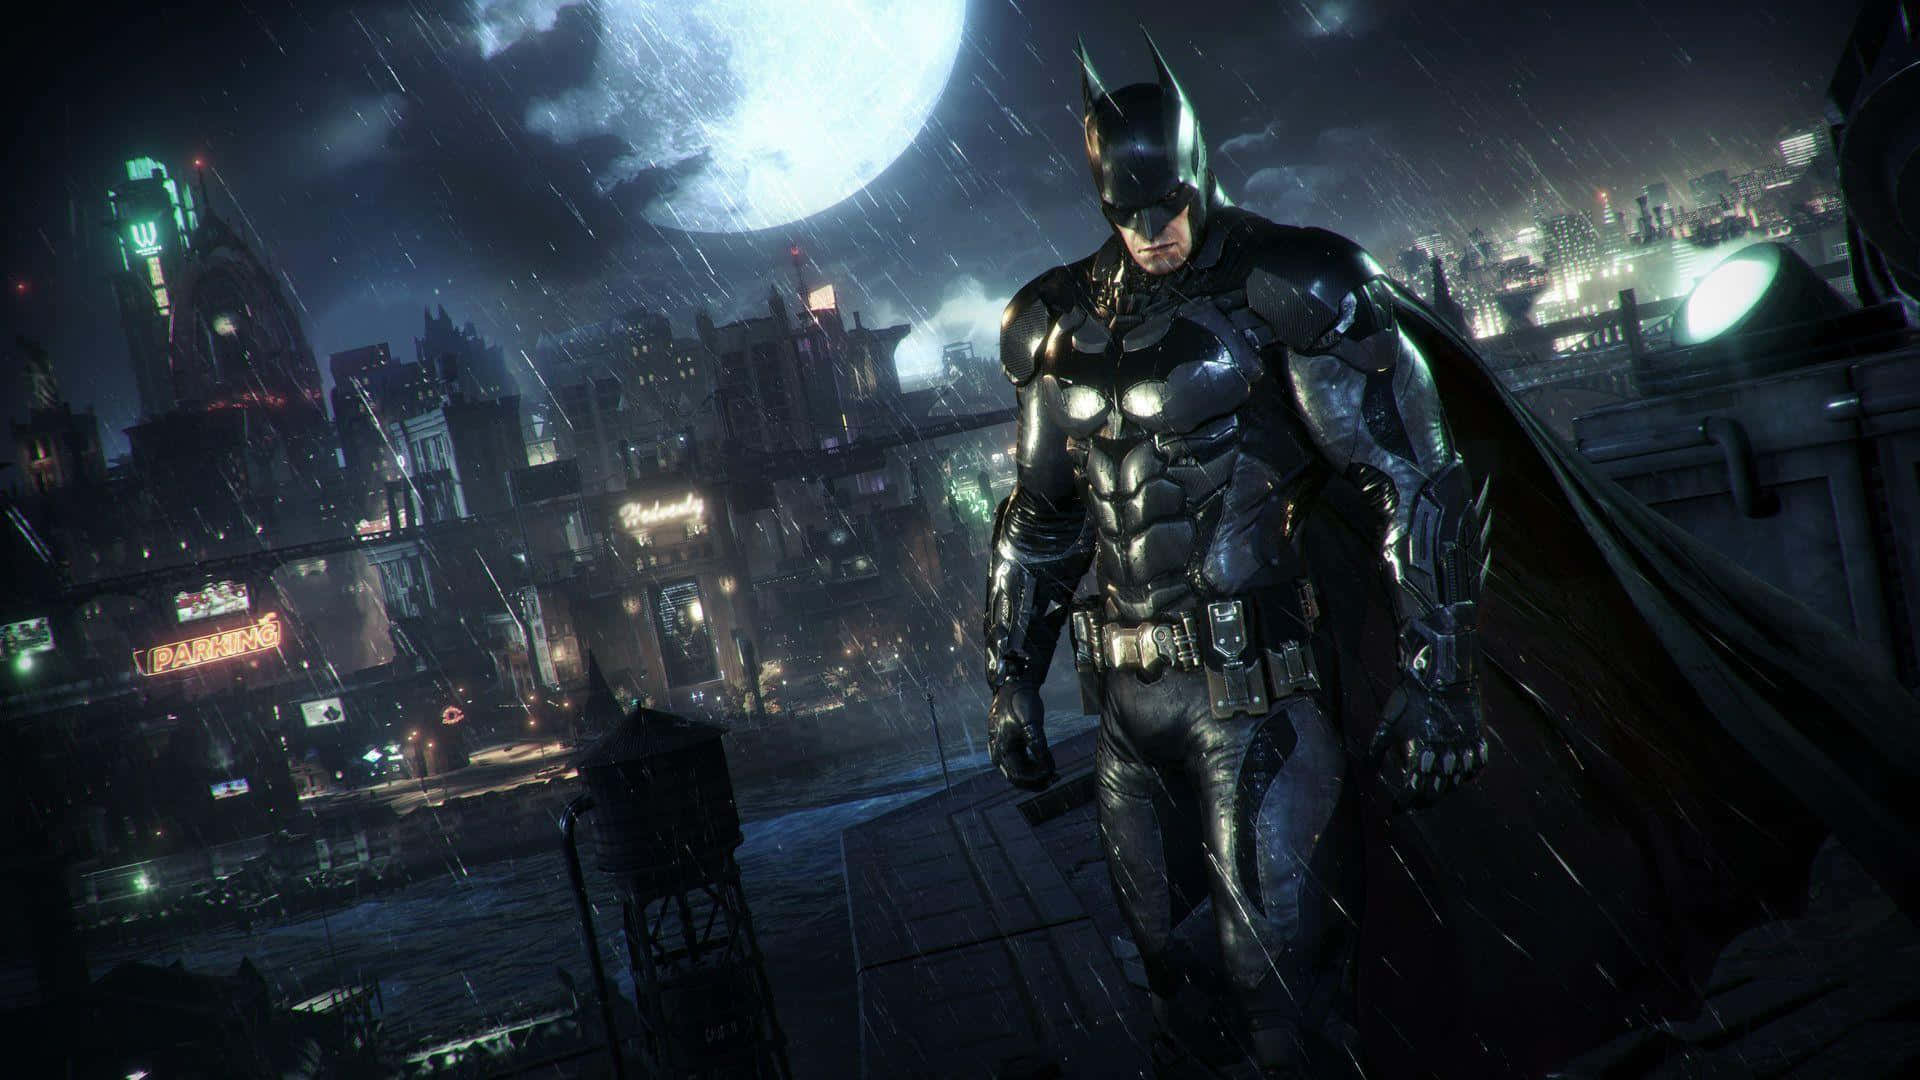 Batmansi Erge Dalle Ombre Nella Città Di Gotham. Sfondo